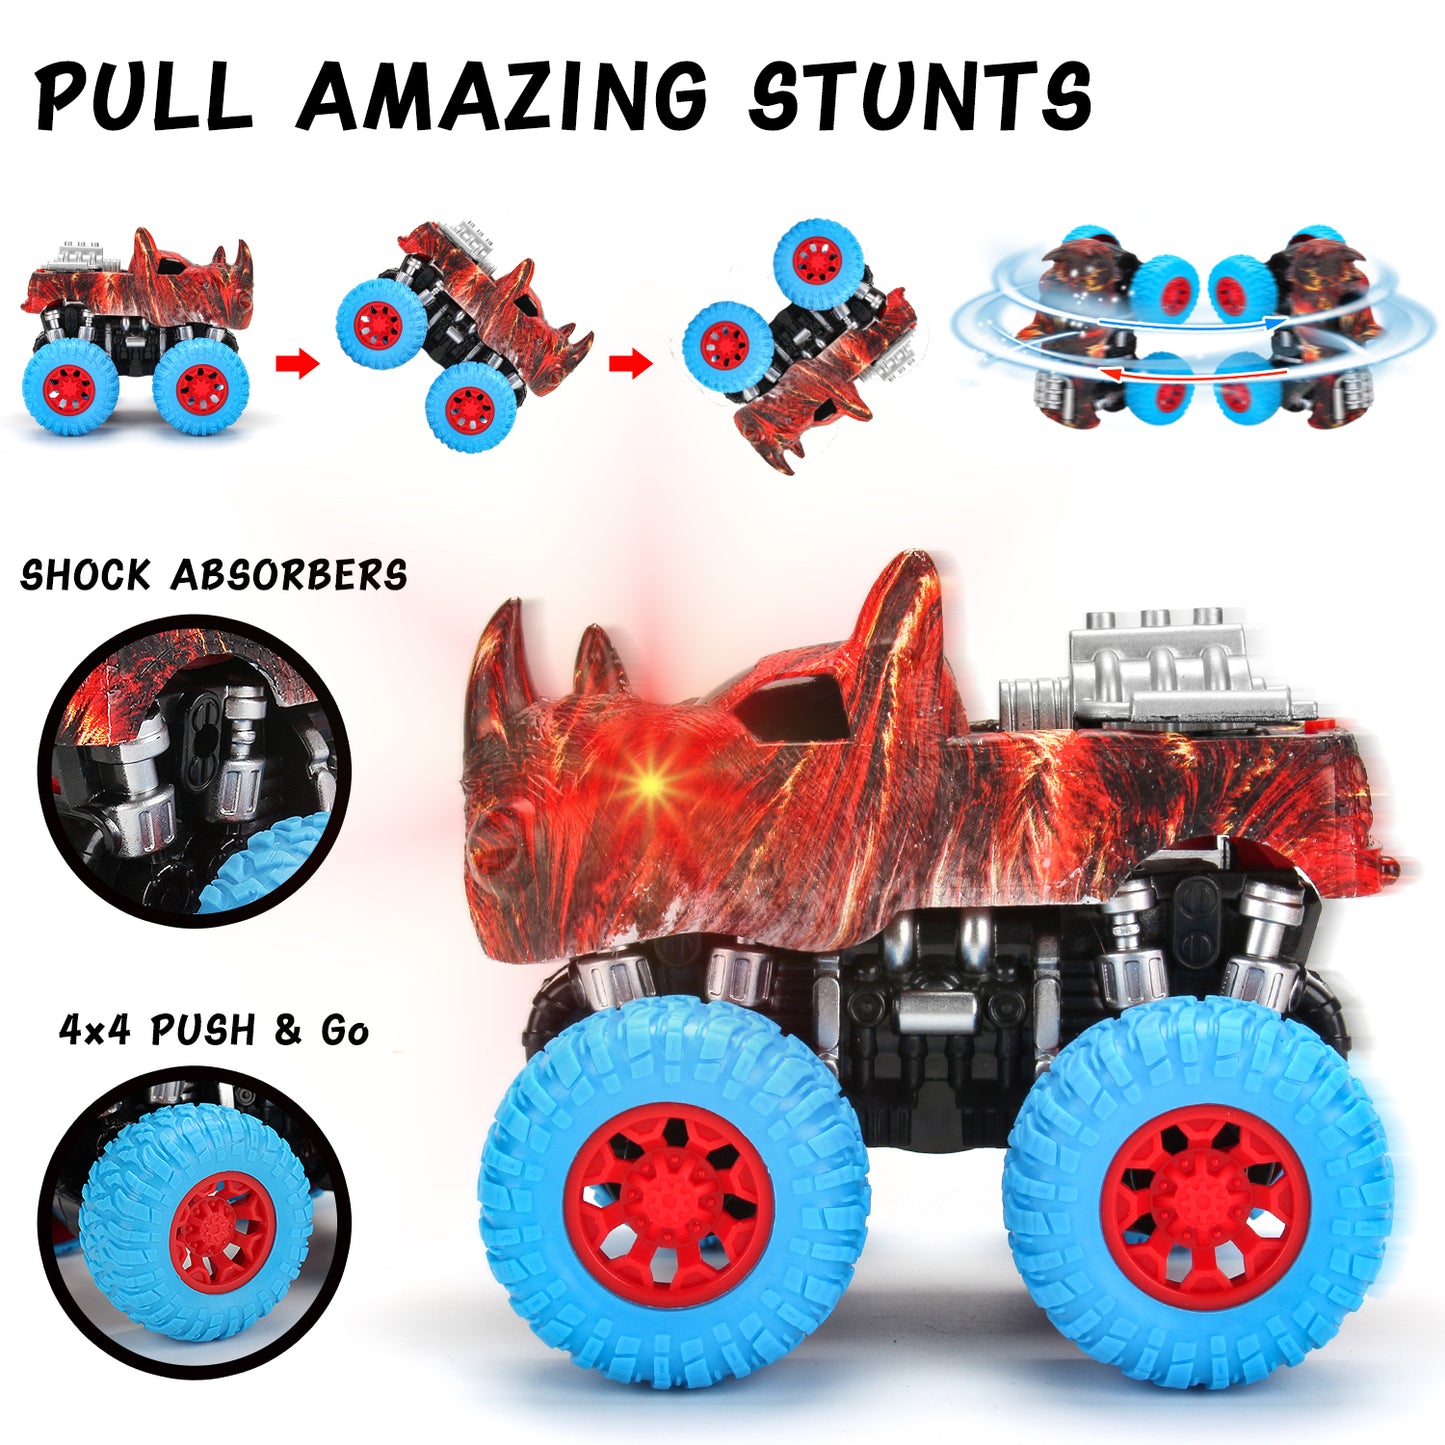 Набор игрушек Monster Truck - 2 грузовика + 2 игрушечных животных